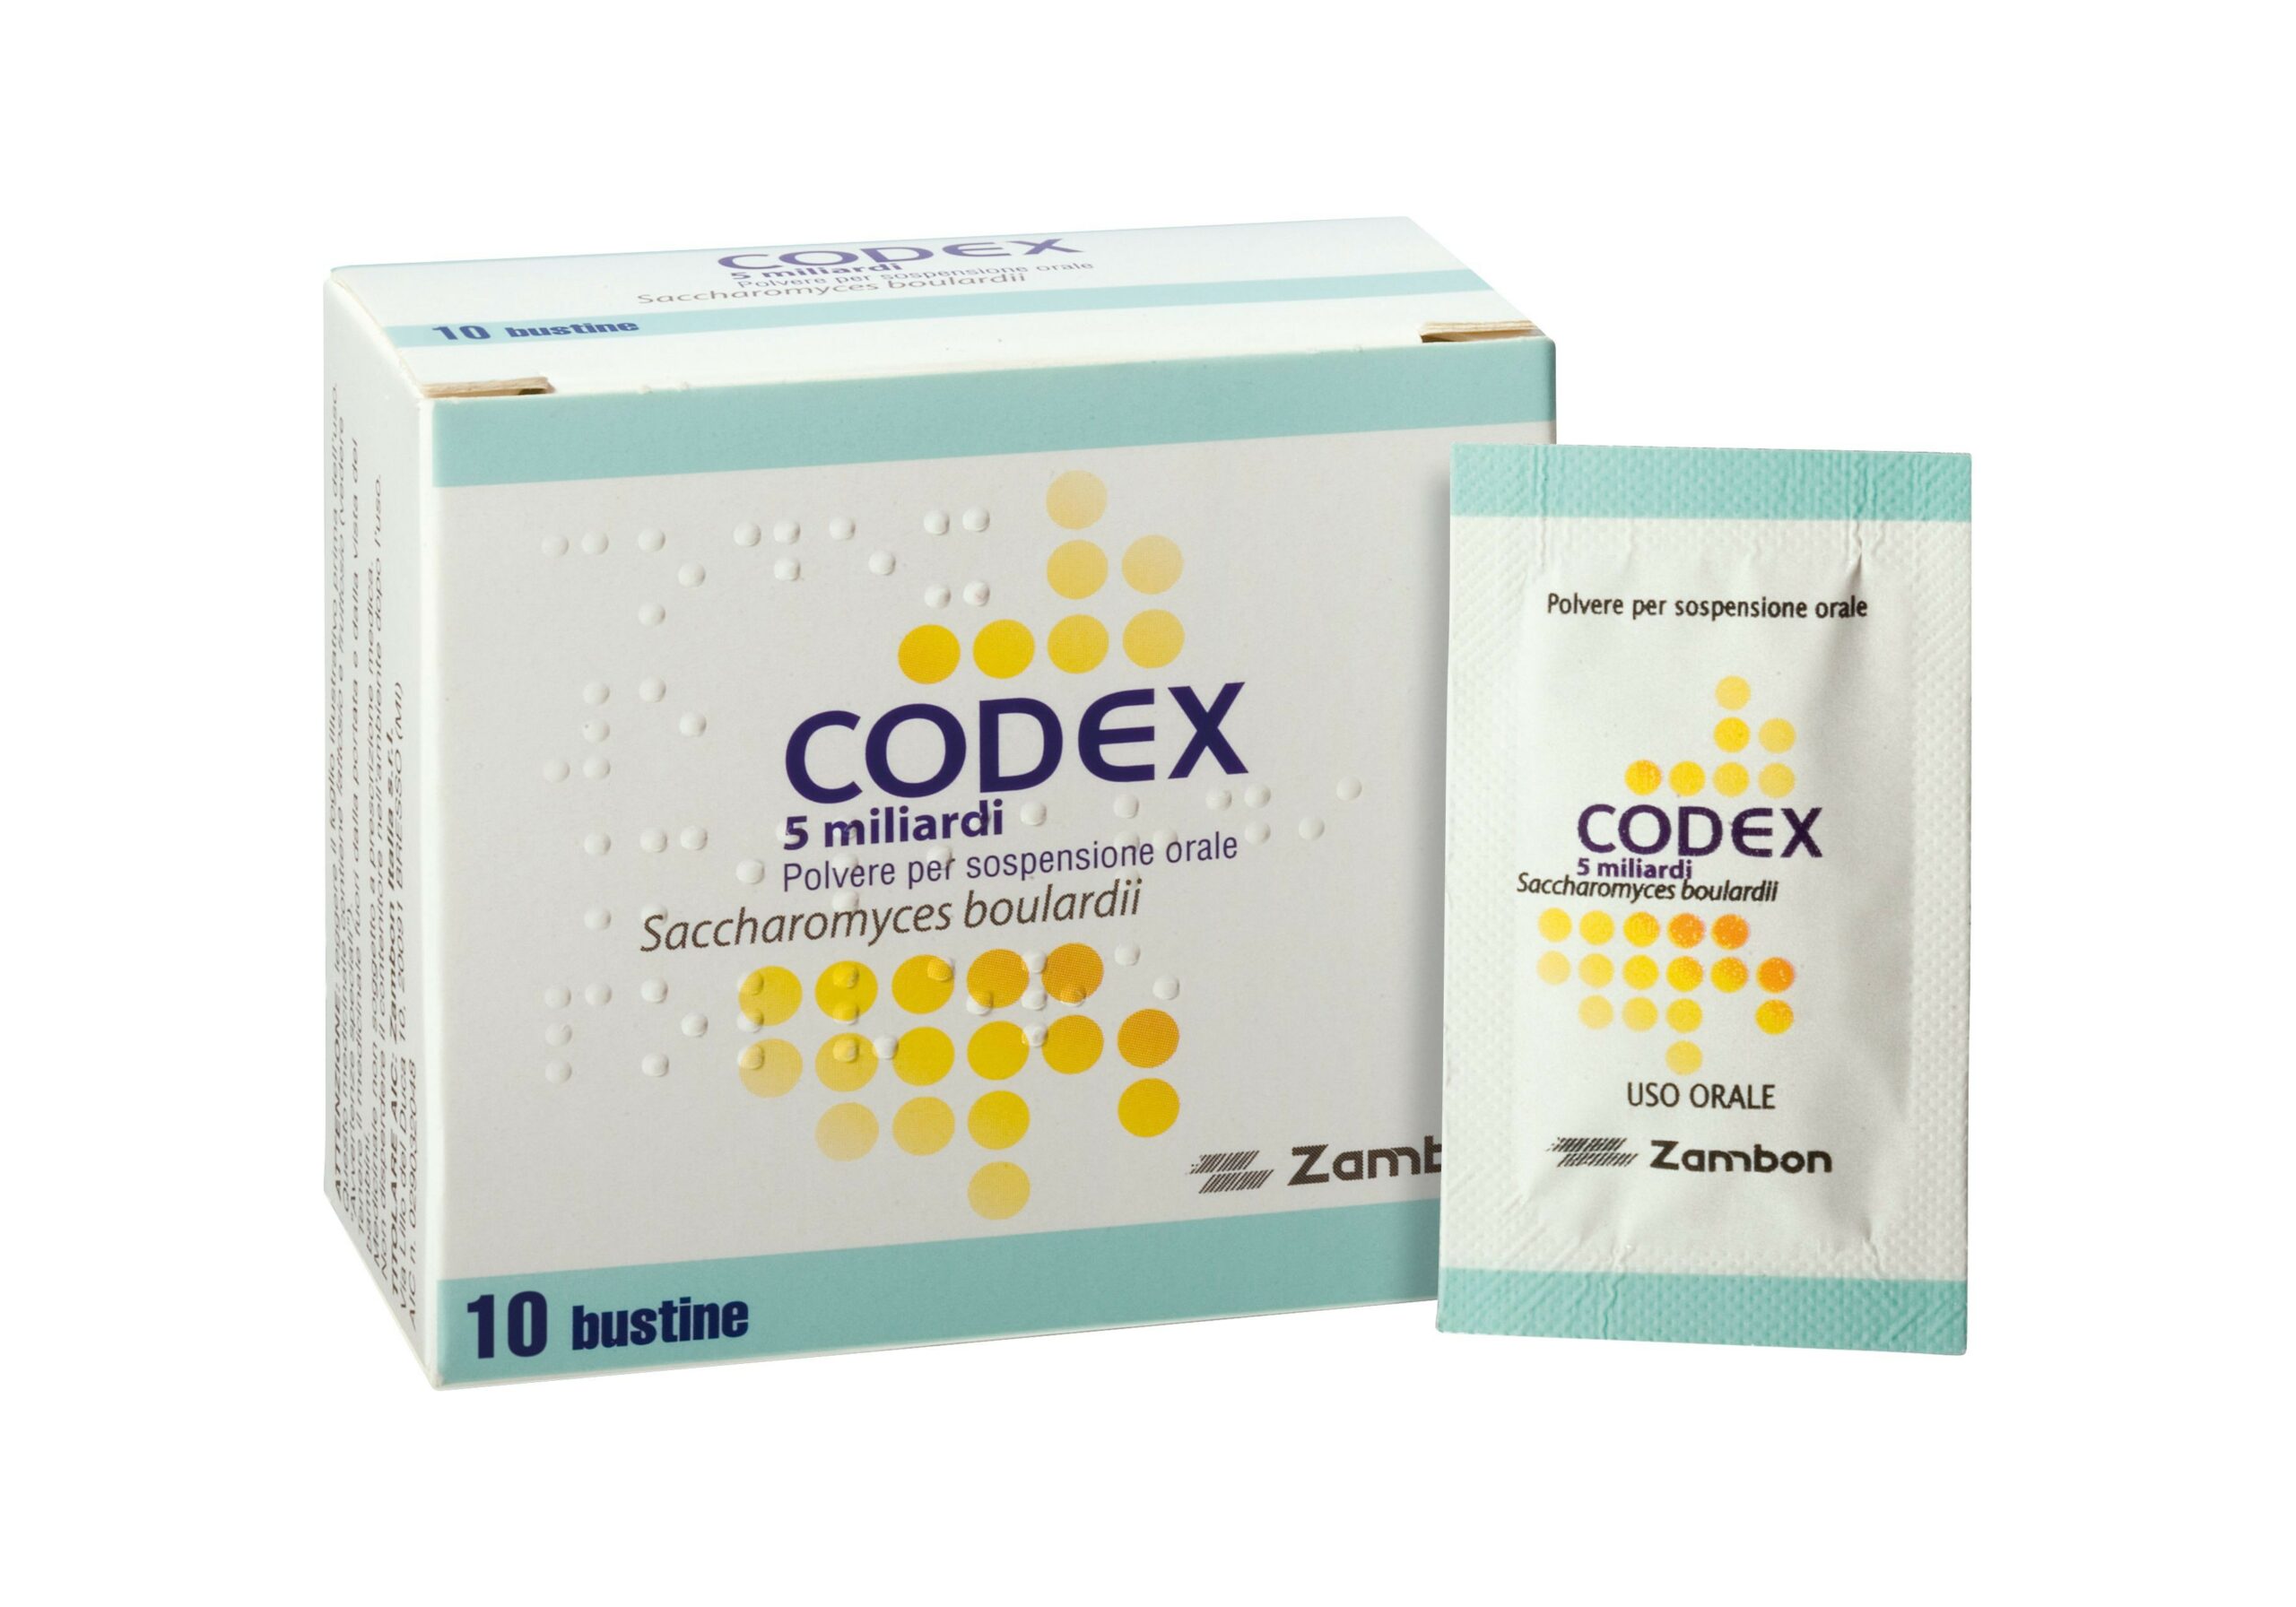 Quanto costa il Codex in farmacia?